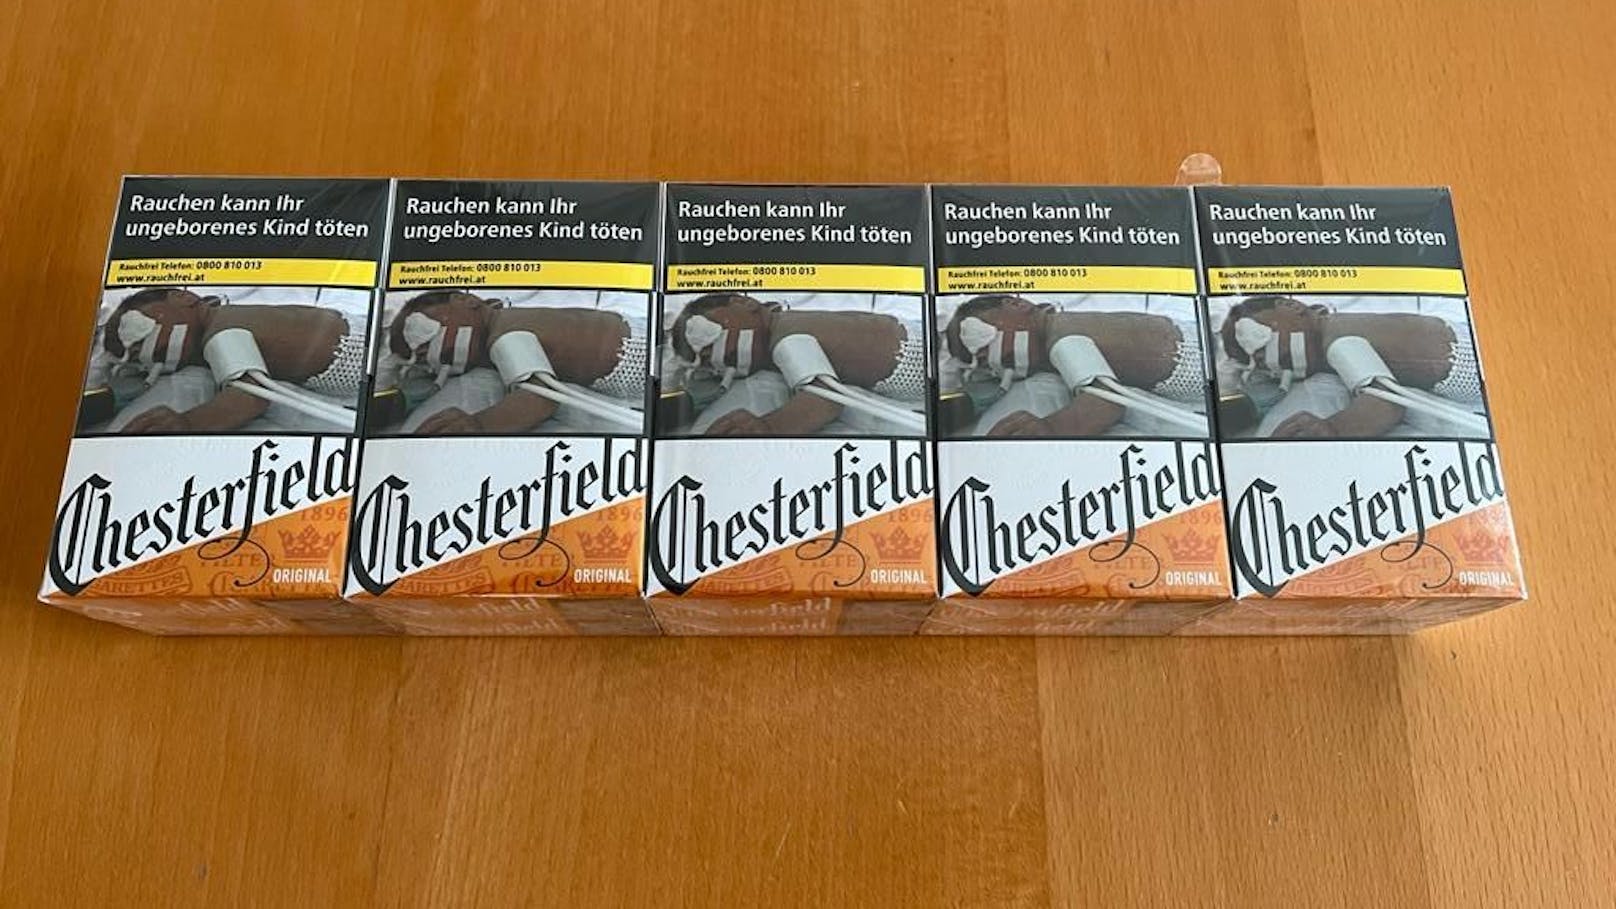 Chesterfield von 5,30 auf 5,50 - Chesterfield 23 Stk. gar von 5,50 auf 6 Euro.